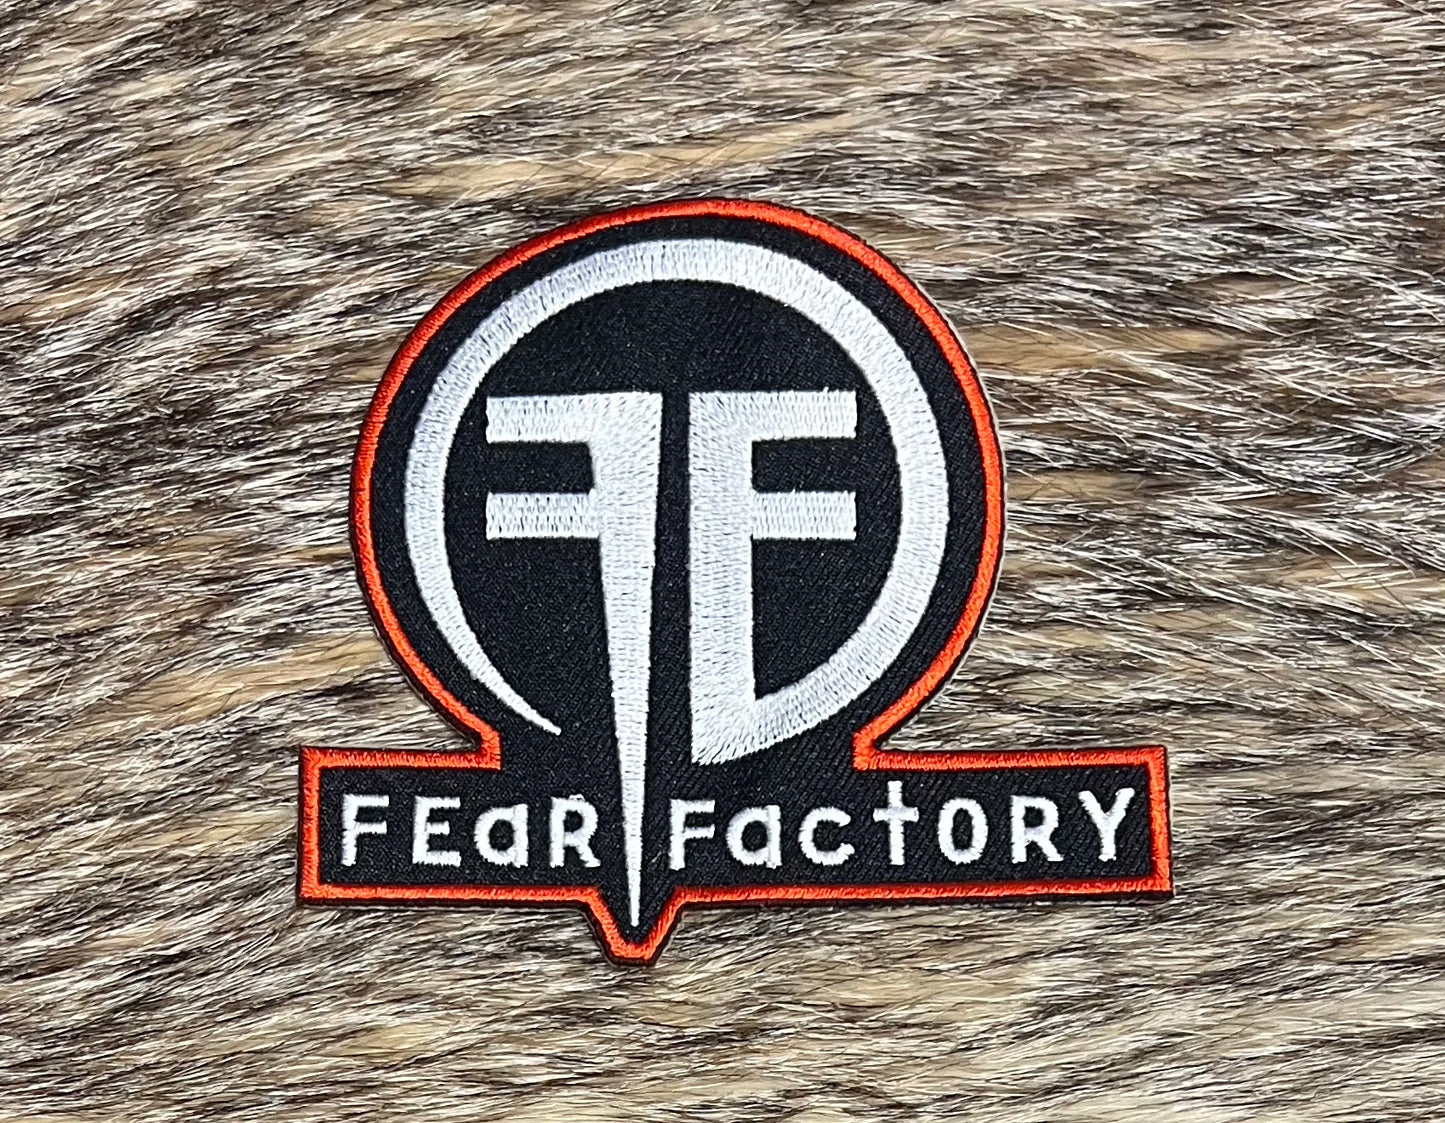 Fear Factory - Obsolete Patch